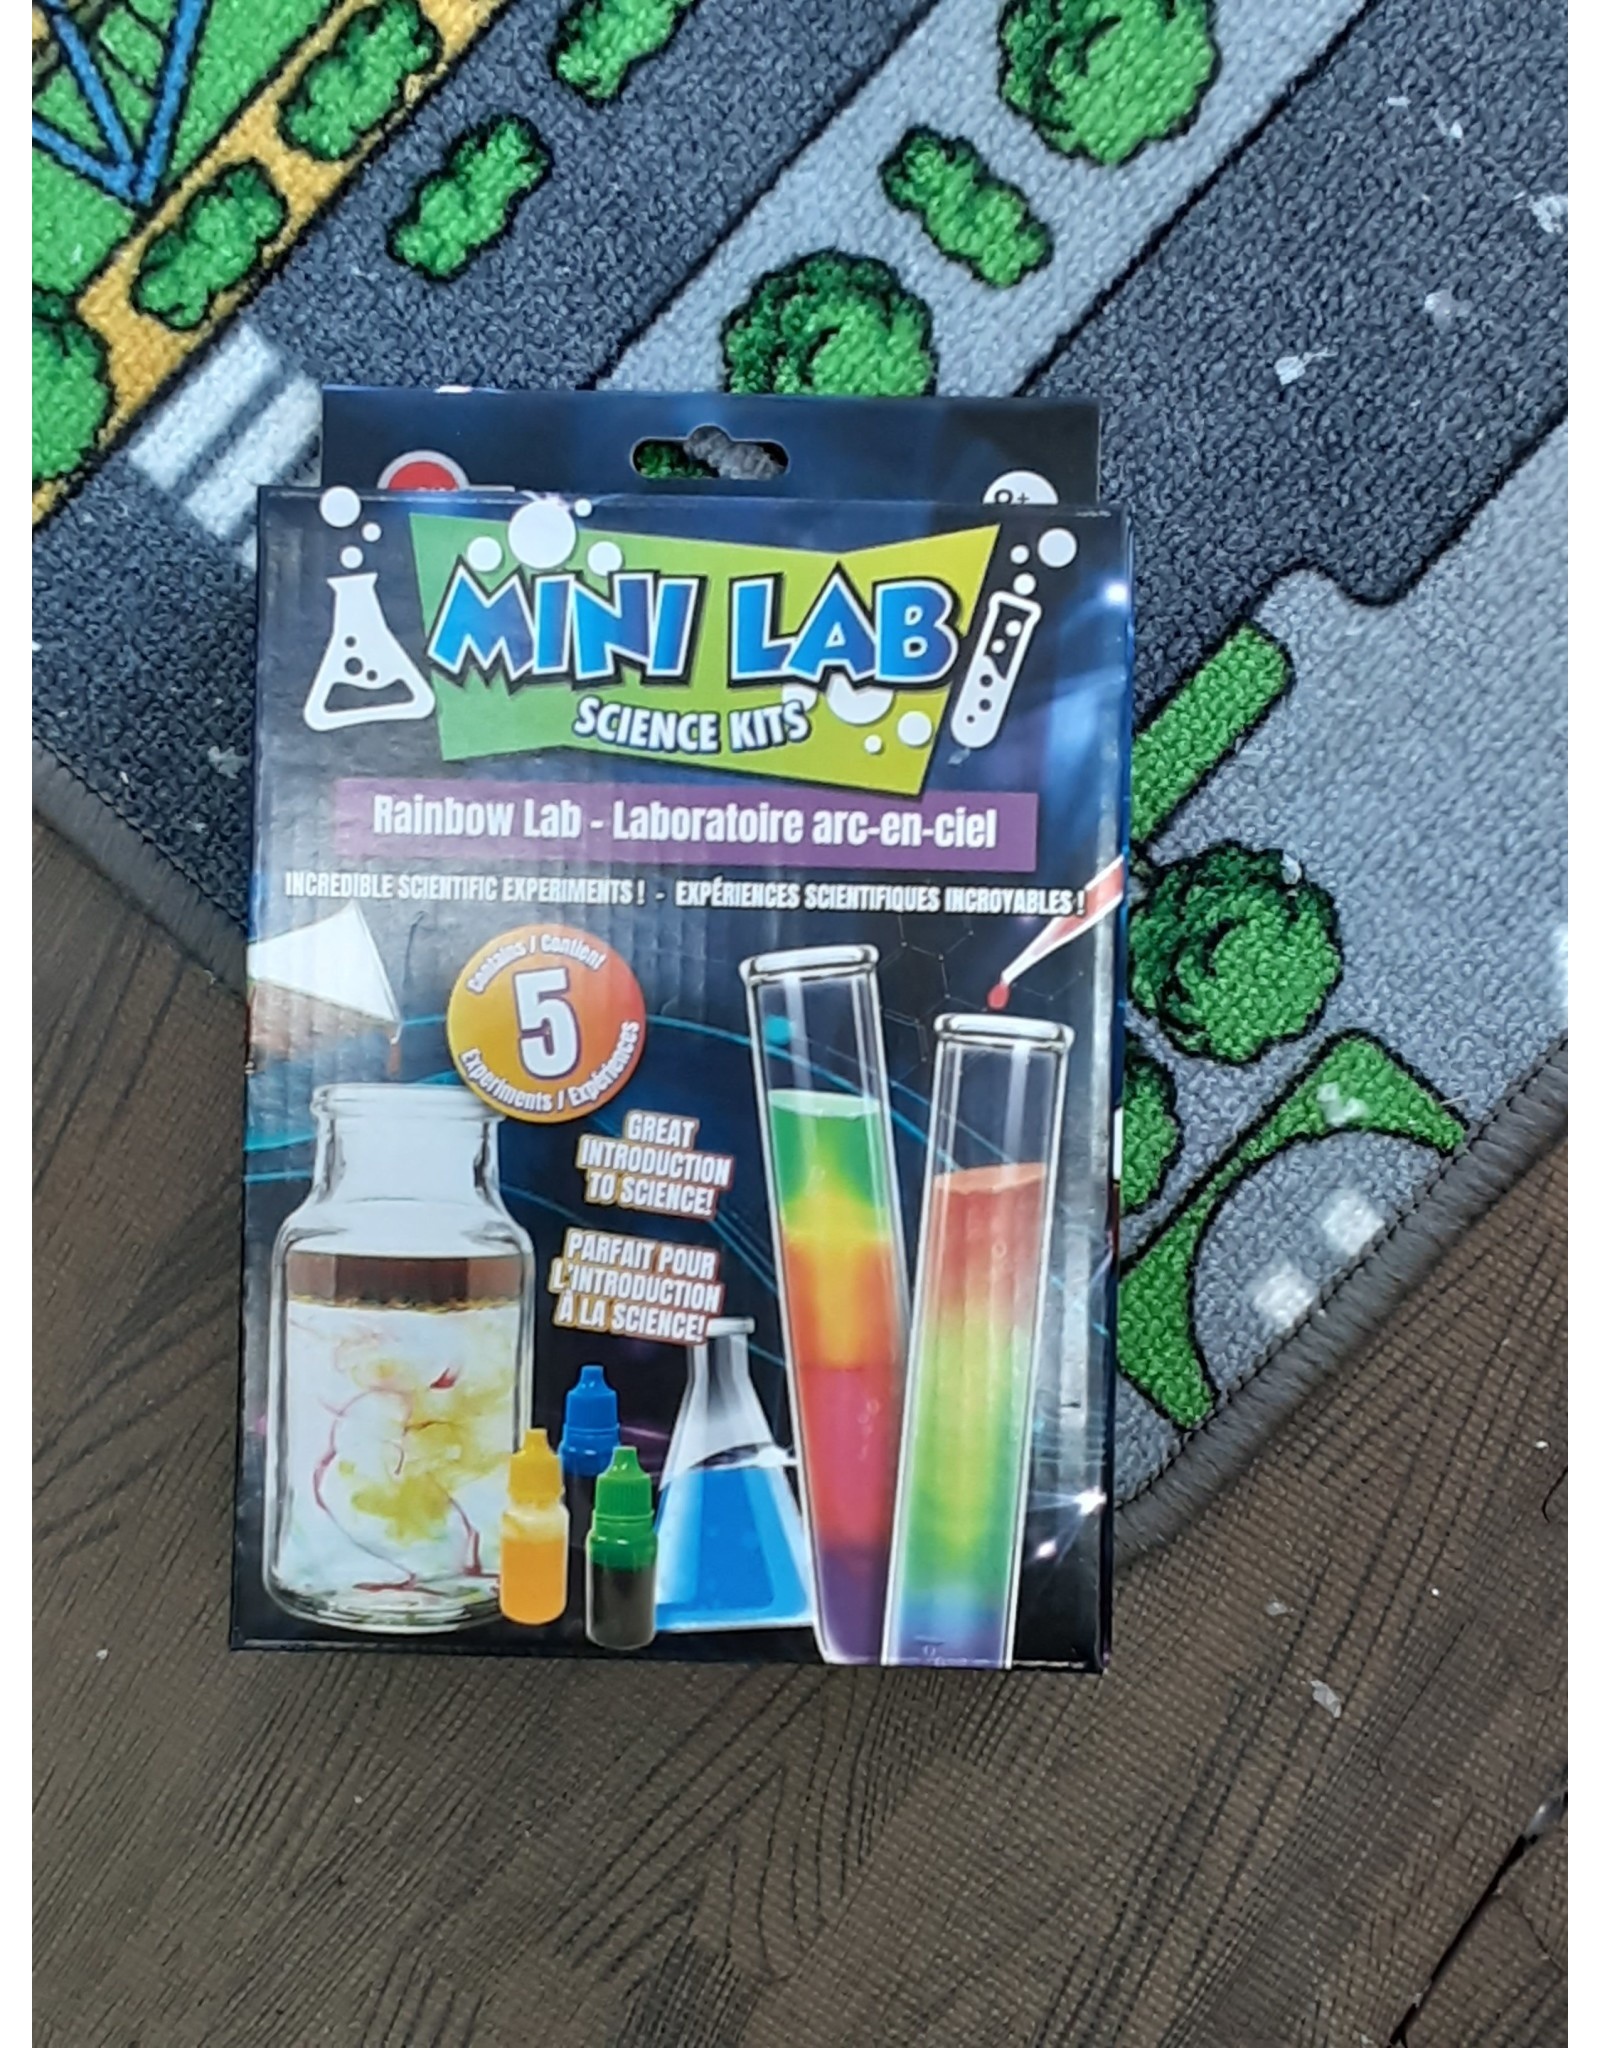 Ricochet Mini lab science kits - Rainbow lab